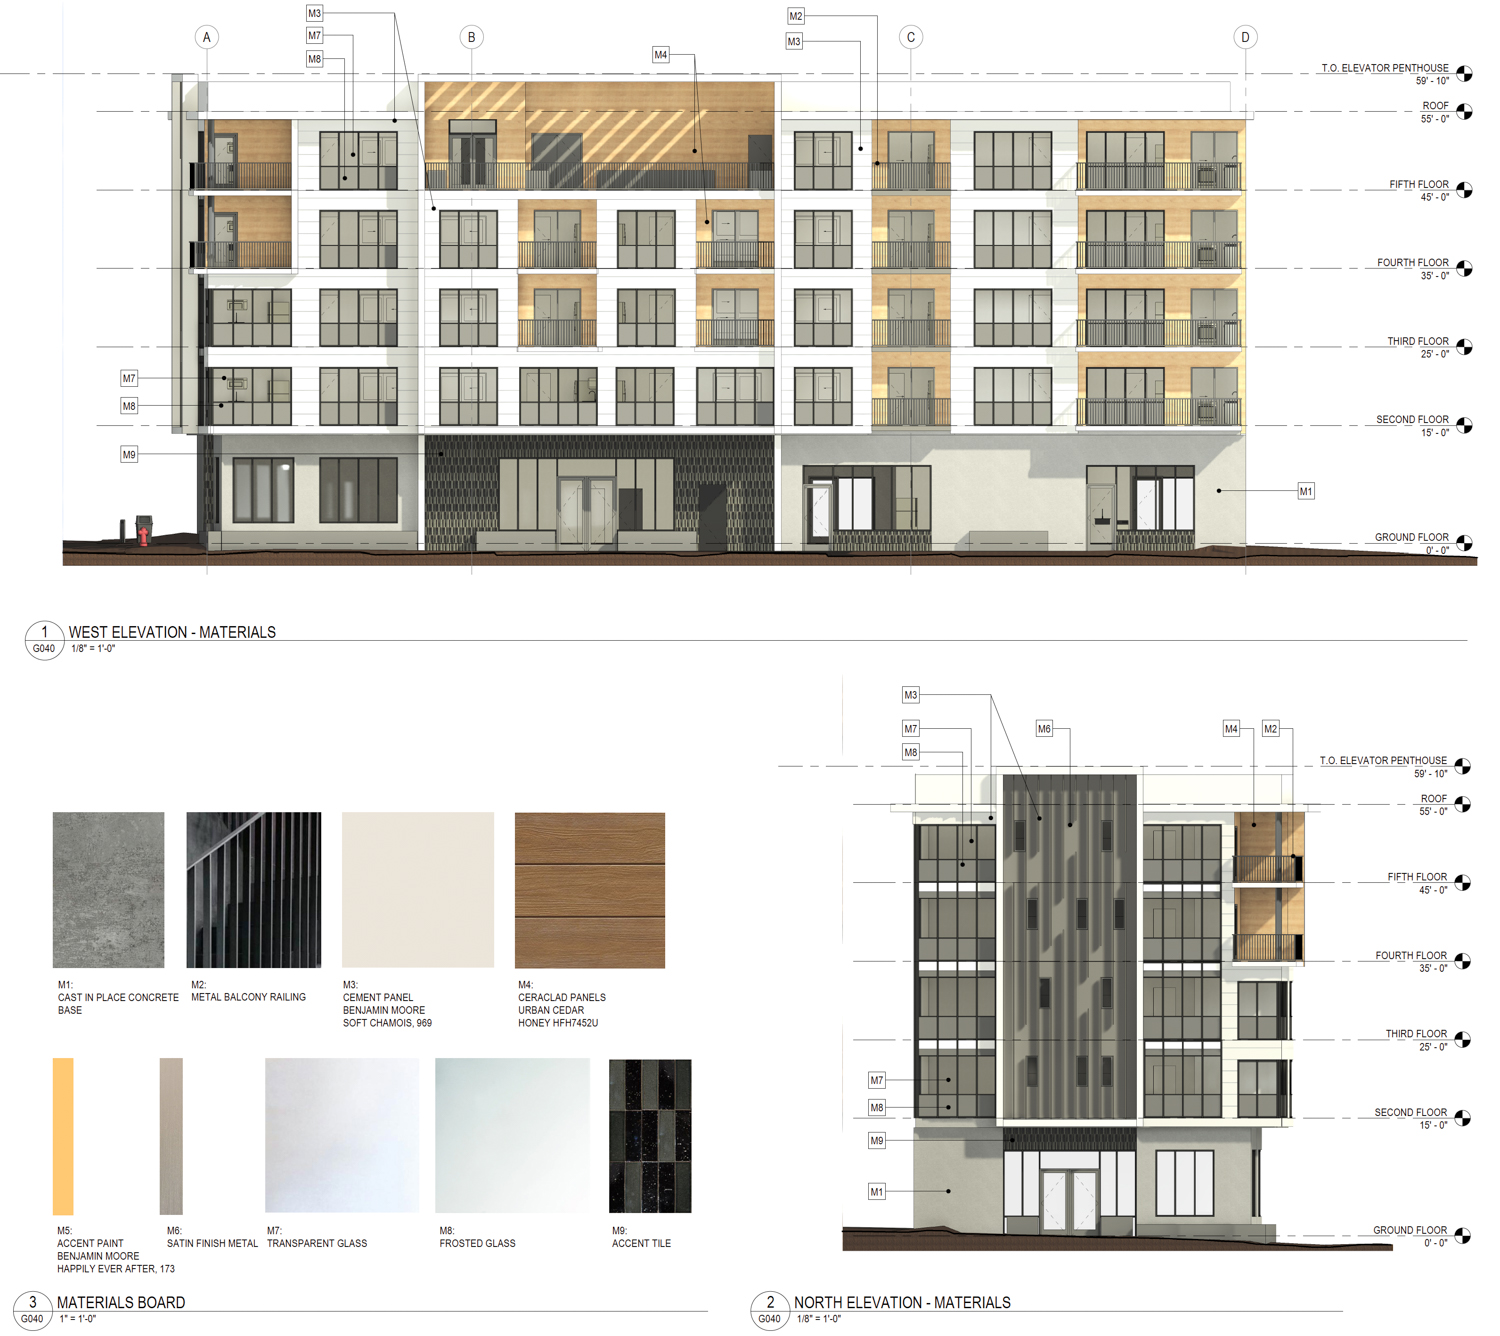 1652 University Avenue facade elevations, rendering by Studio KDA